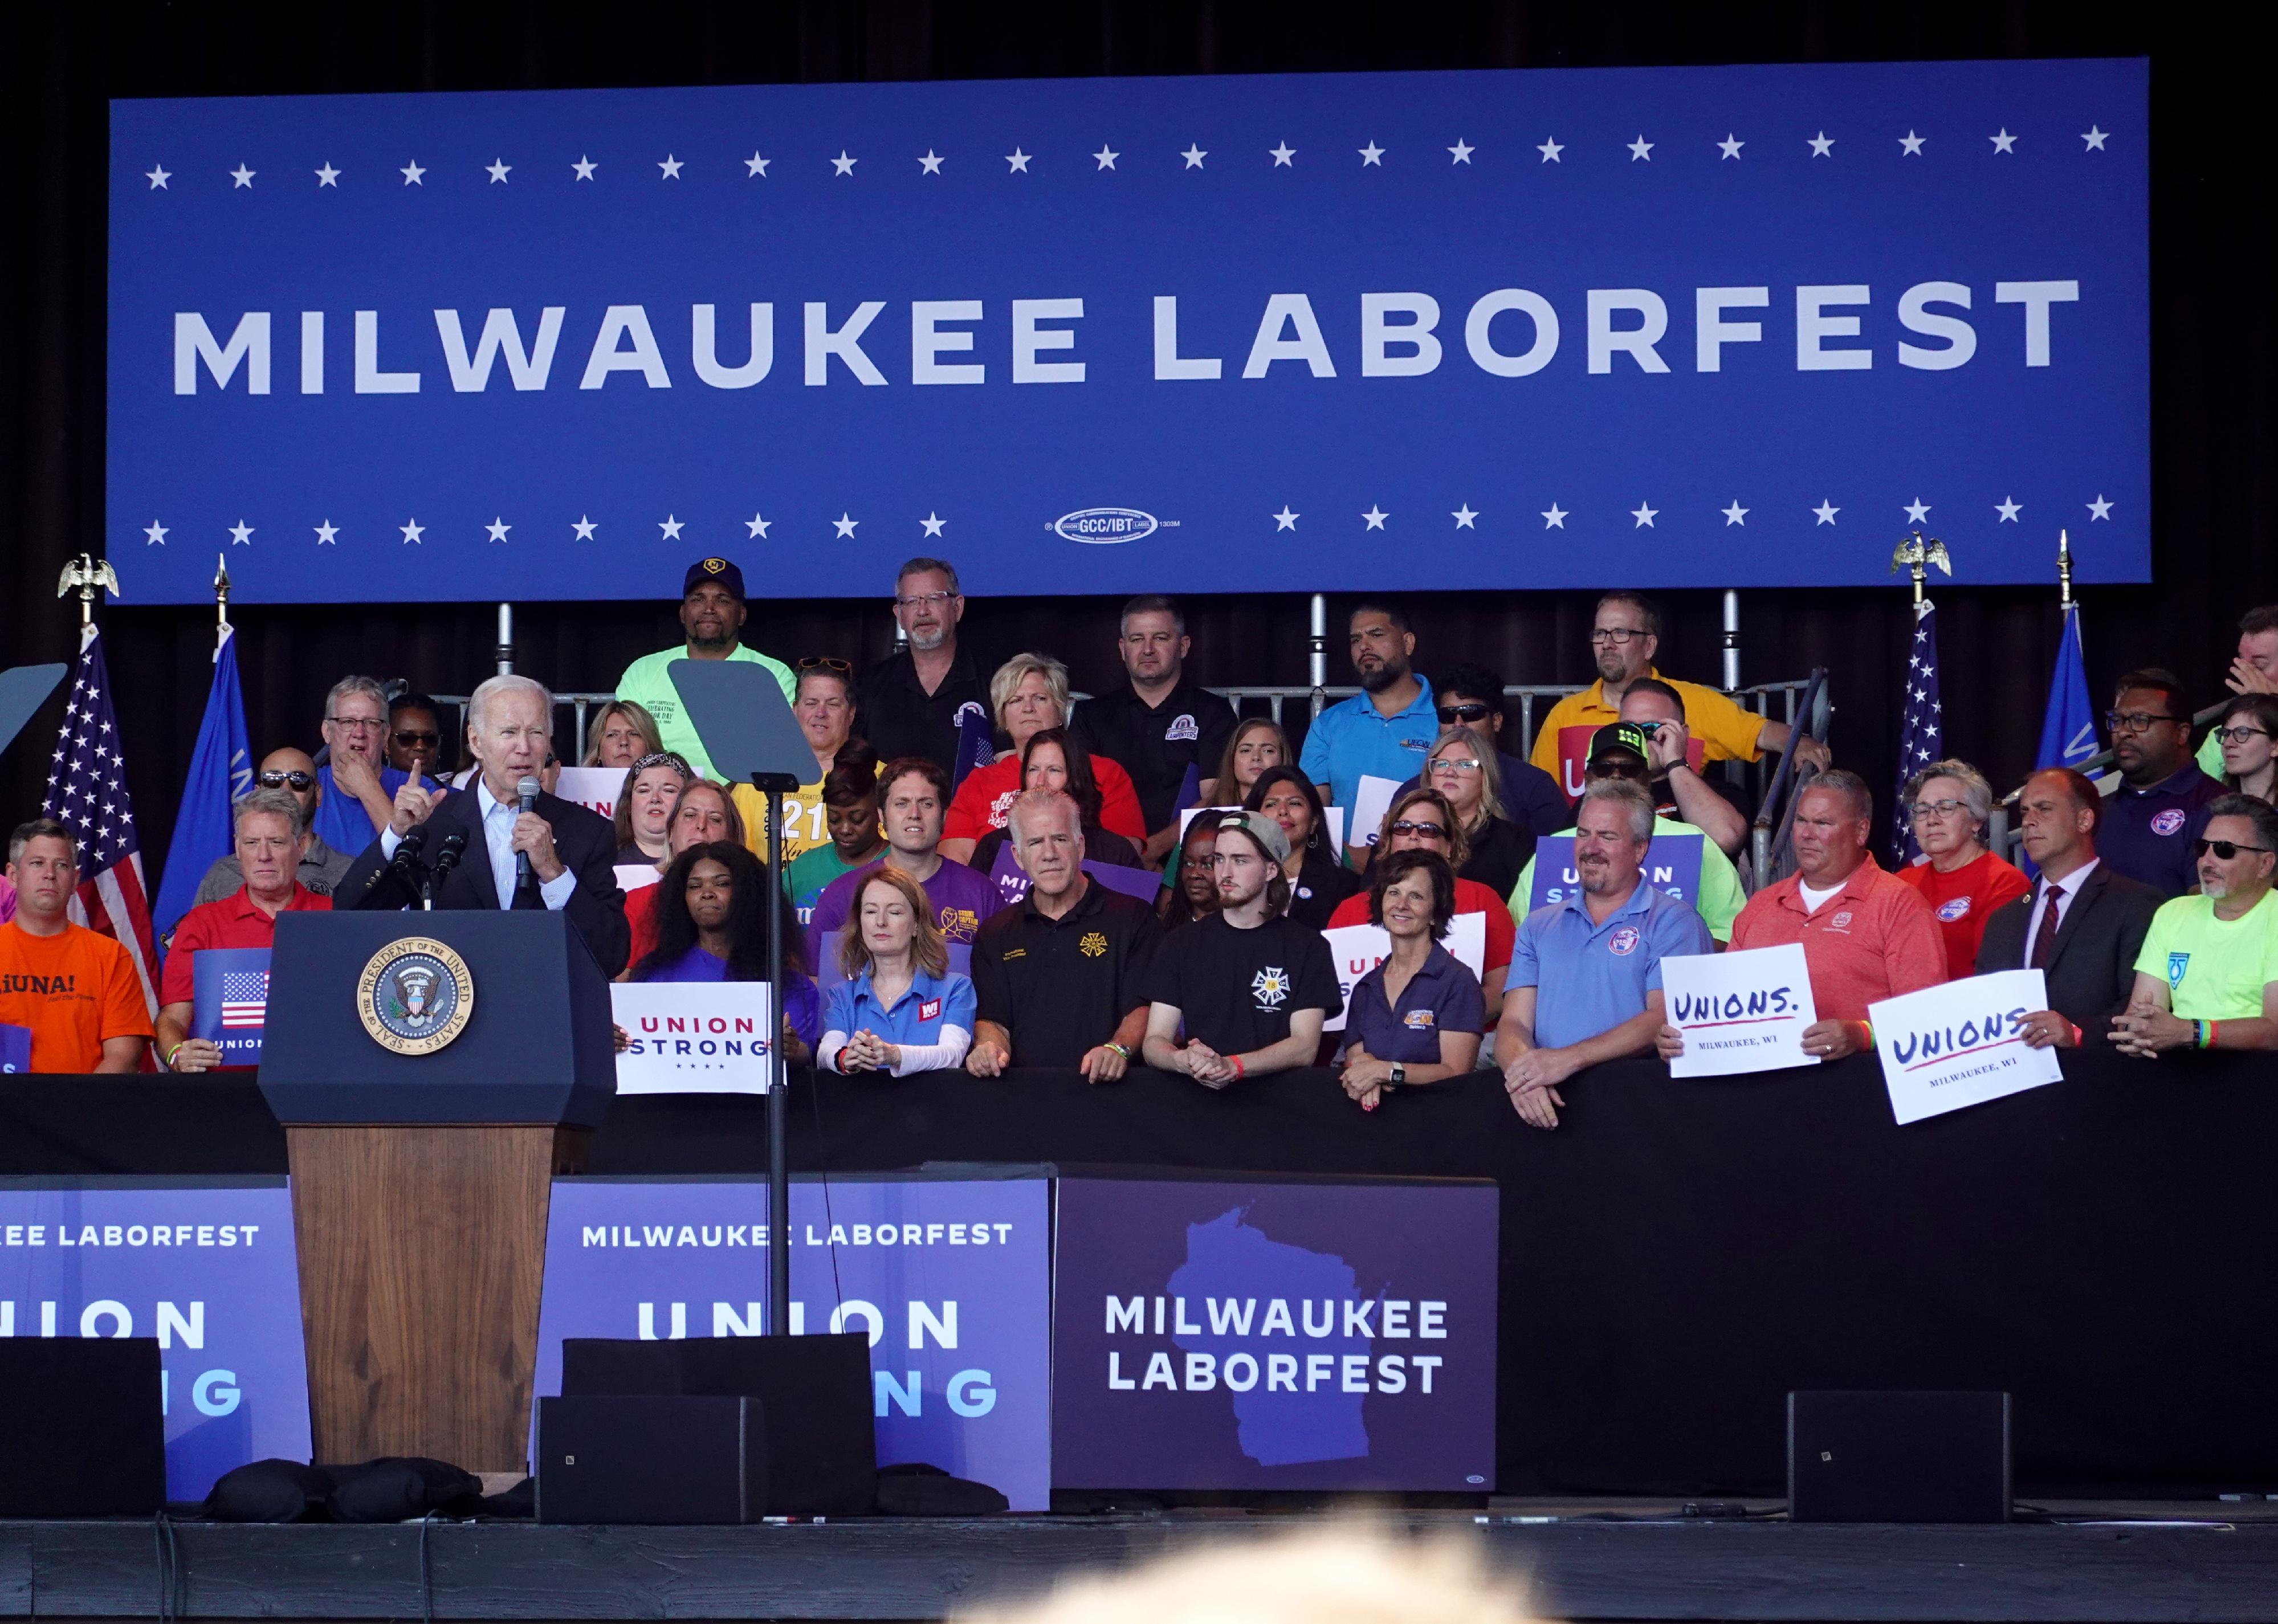 Biden speaking at the Milwaukee, WI labor fest.